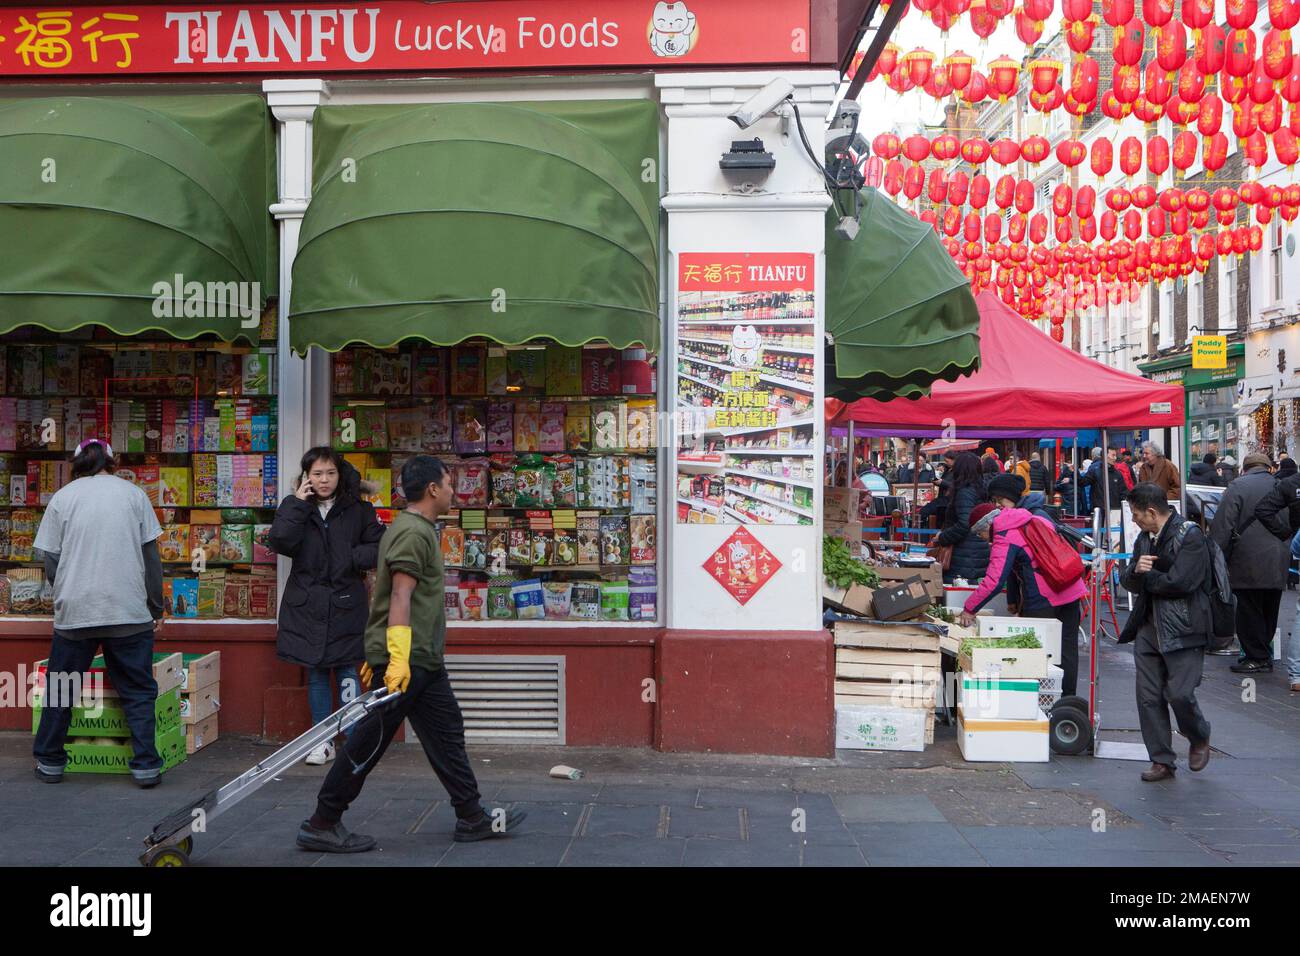 Londra, Regno Unito, 19 gennaio 2023: A Chinatown i negozi stanno prendendo le consegne in anticipo di Capodanno cinese e le strade sono piene di locali e turisti. L'anno cinese del coniglio inizia domenica 22nd gennaio. Anna Watson/Alamy Live News Foto Stock